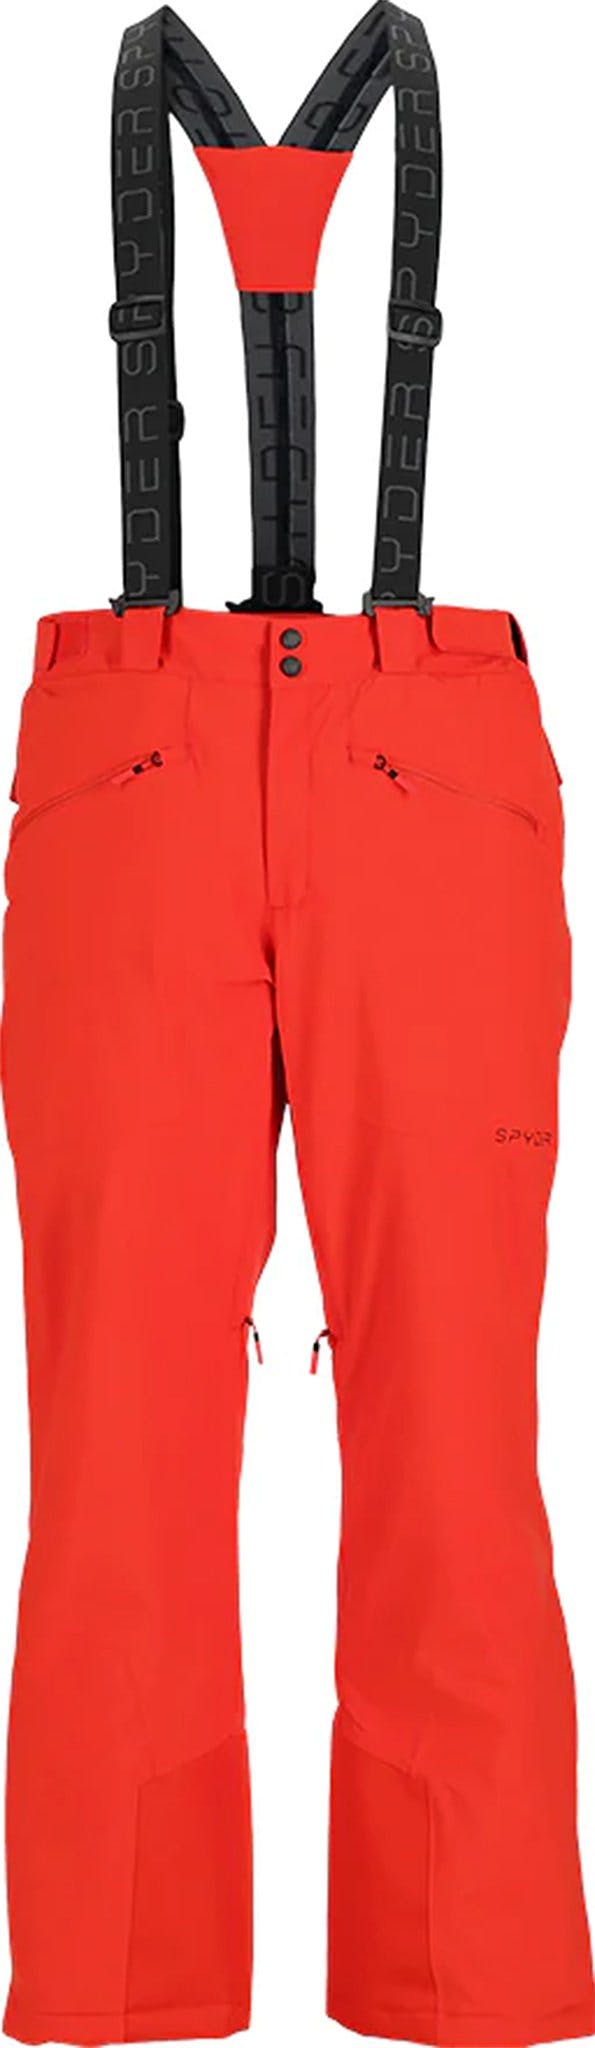 Image de produit pour Pantalon de ski isolé Sentinel - Homme